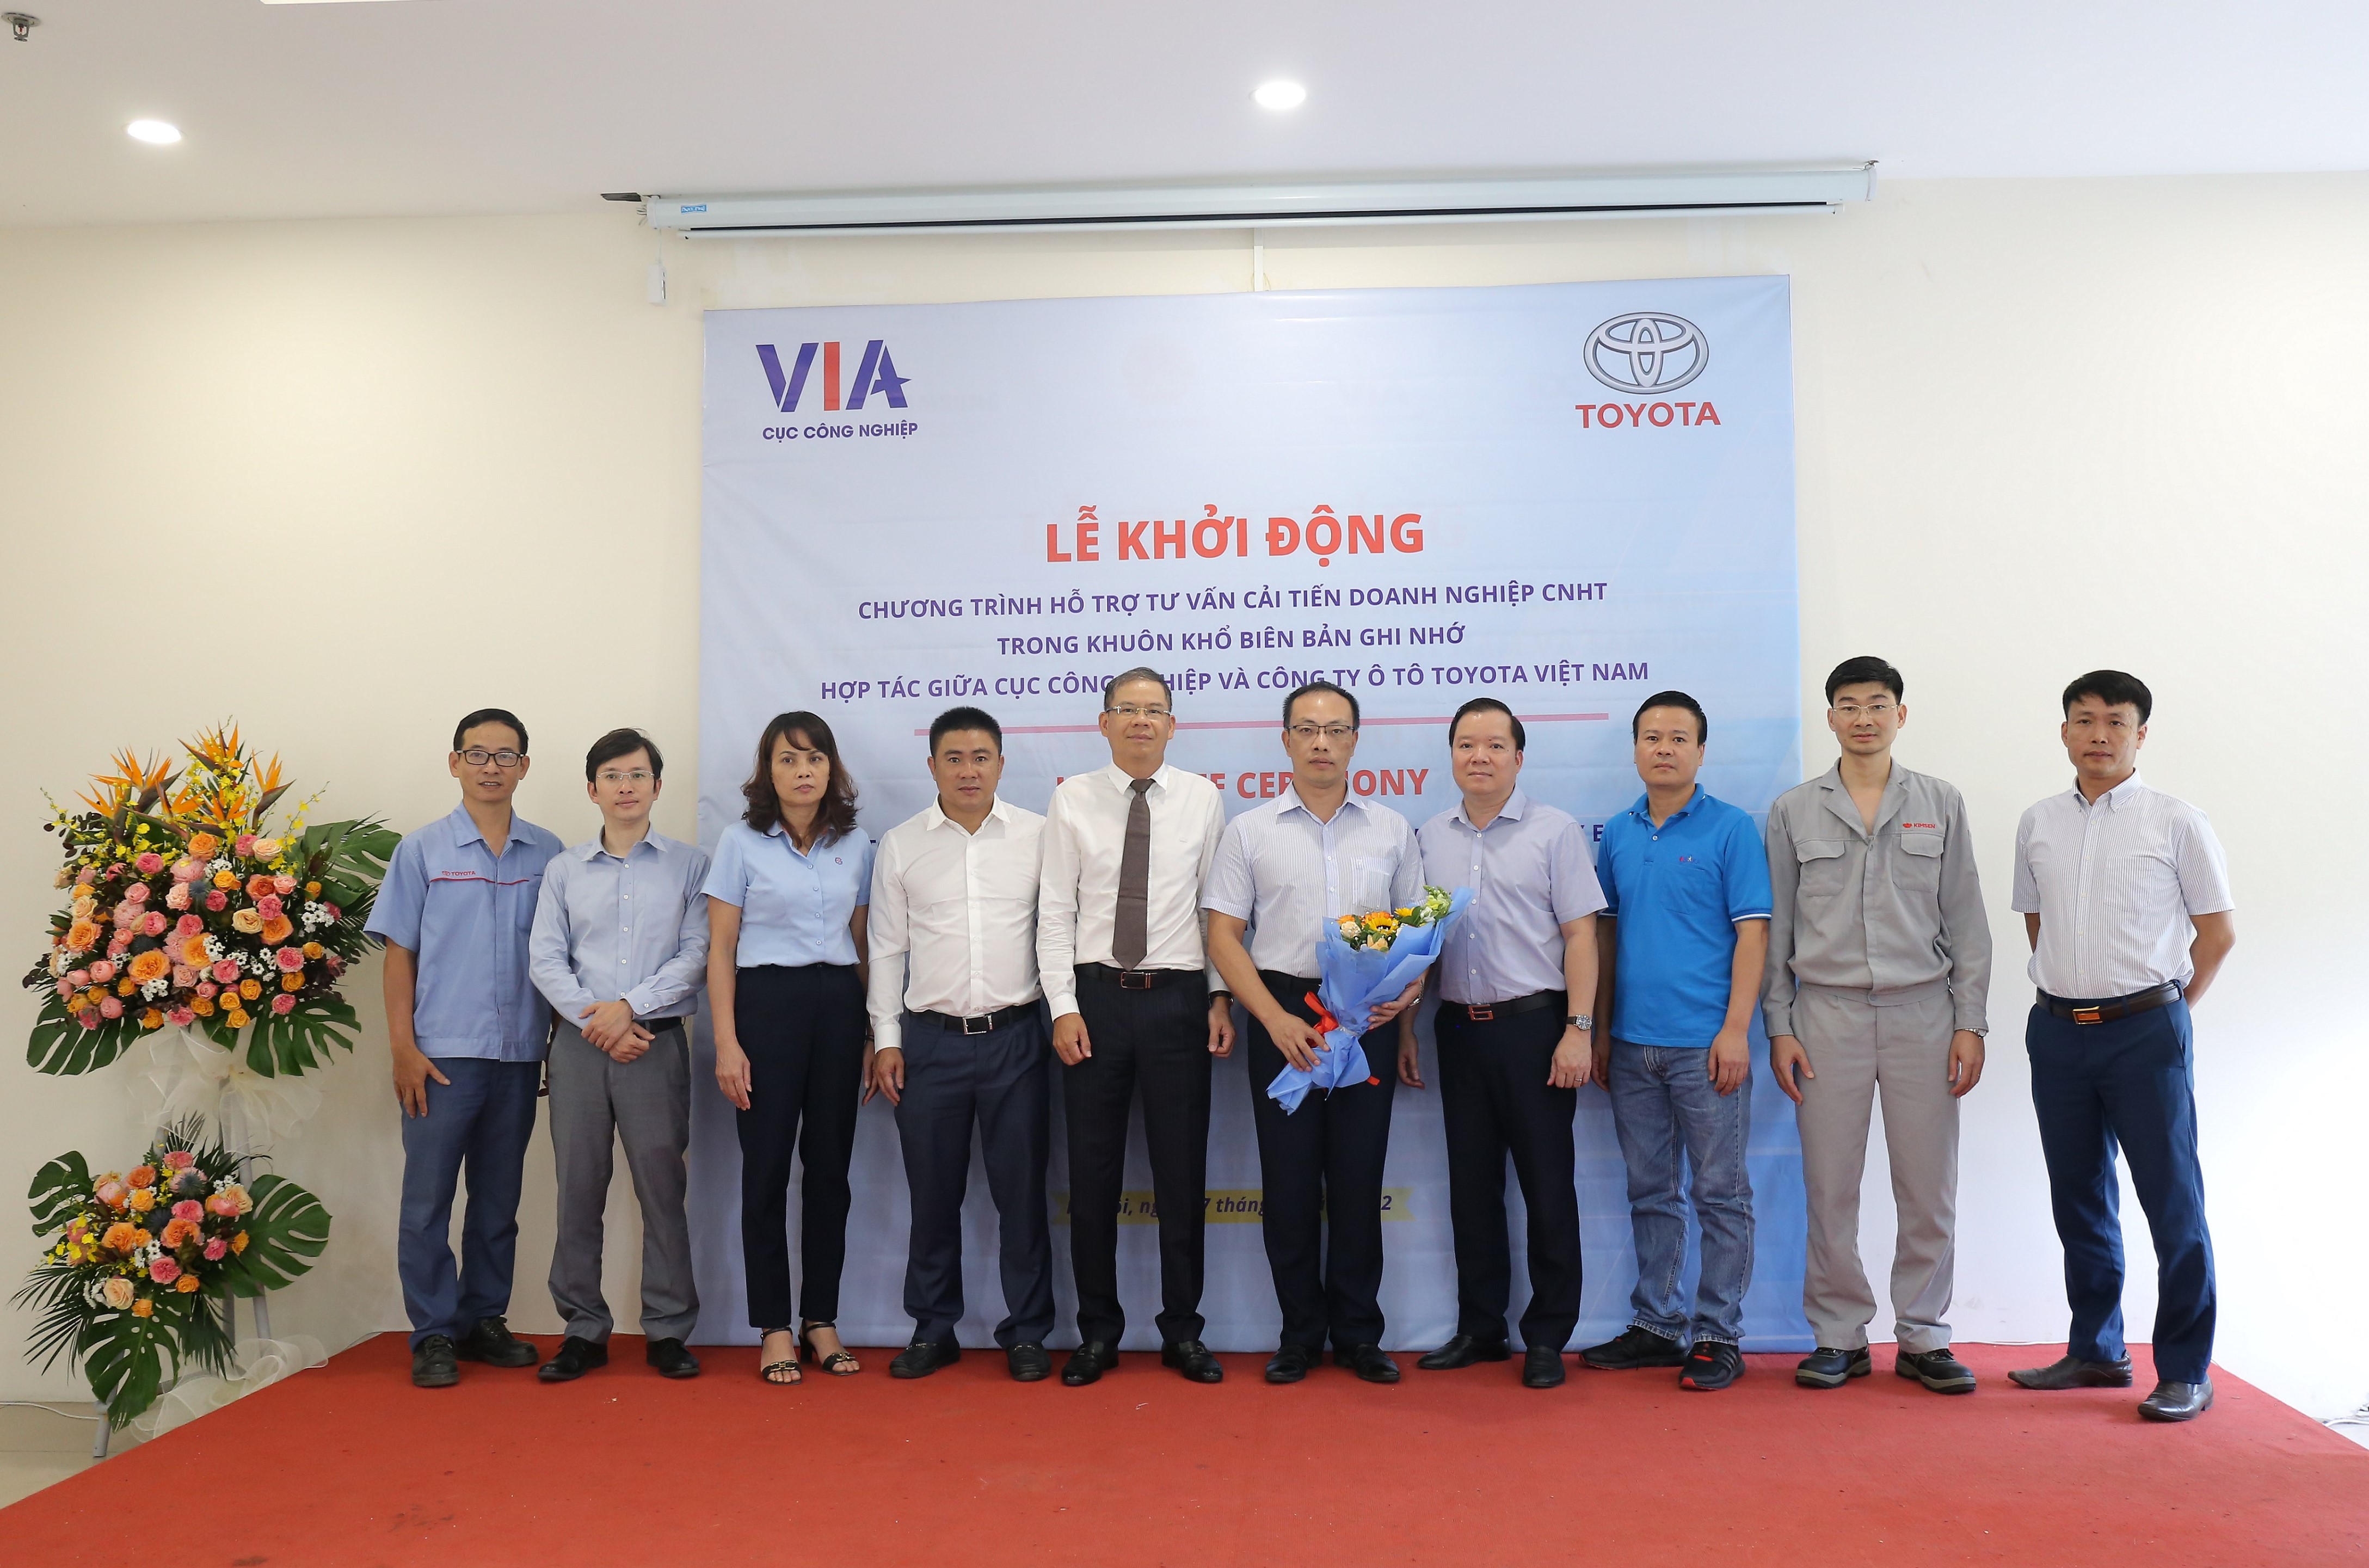 Toyota Việt Nam và Cục Công nghiệp - Bộ Công thương khởi động chương trình Hỗ trợ, tư vấn cải tiến doanh nghiệp trong lĩnh vực công nghiệp hỗ trợ